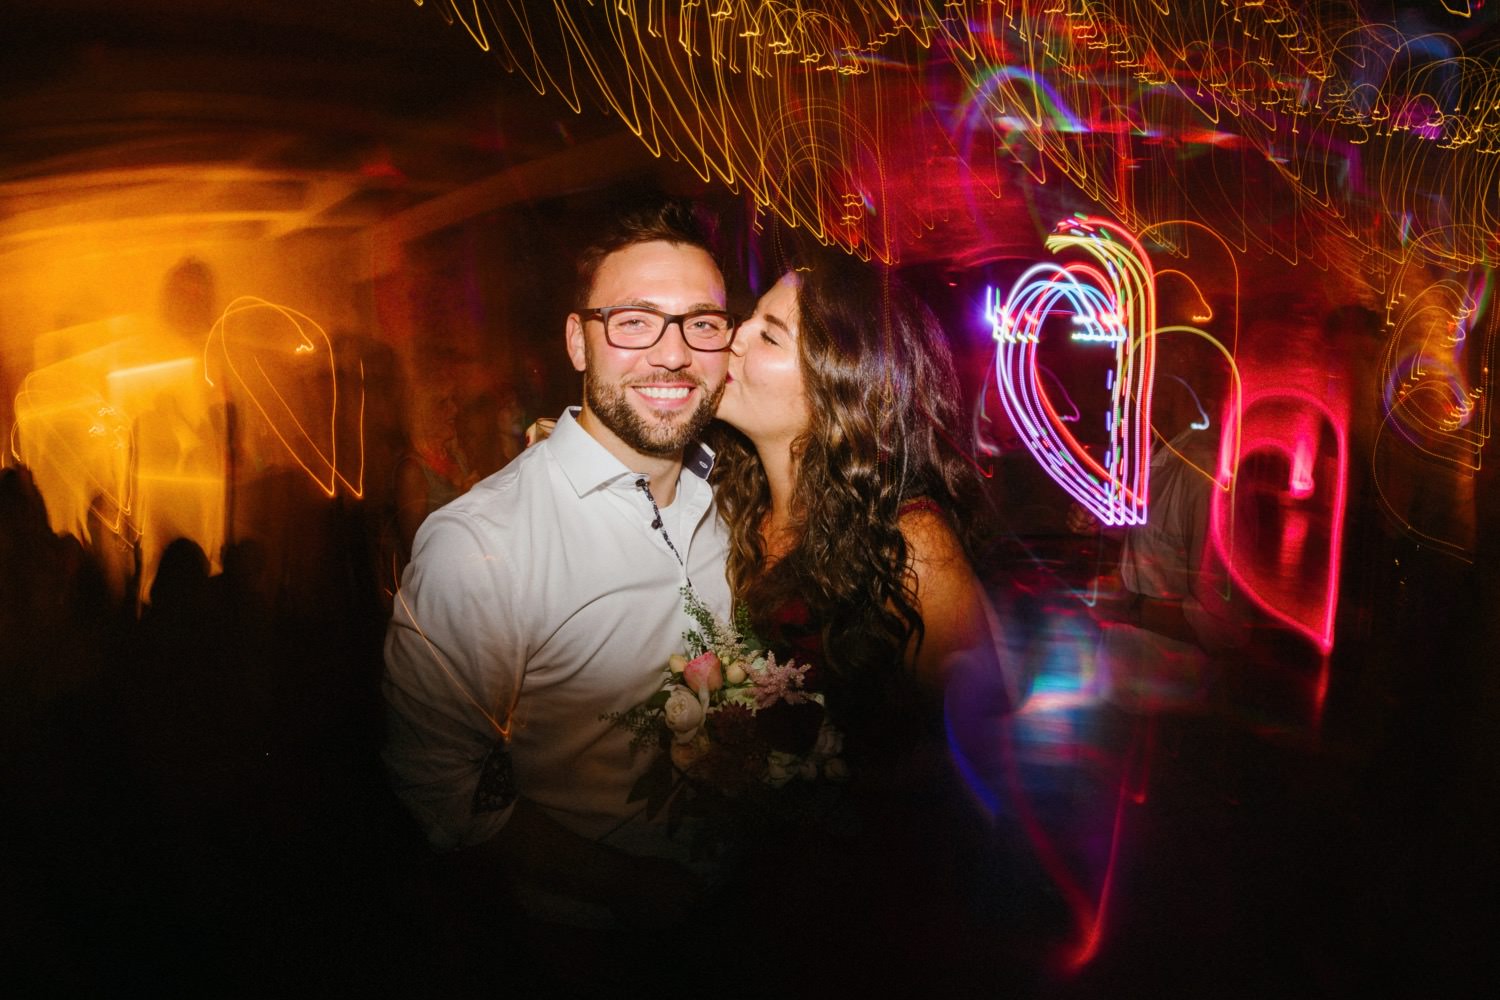 Die Hochzeitsgäste tanzen im Lichtermeer und lassen sich von den Effektlampen in eine Welt voller Magie und Glanz entführen. Die Langzeitbelichtung enthüllt die Schönheit und Lebendigkeit dieses unvergesslichen Augenblicks auf der Tanzfläche.